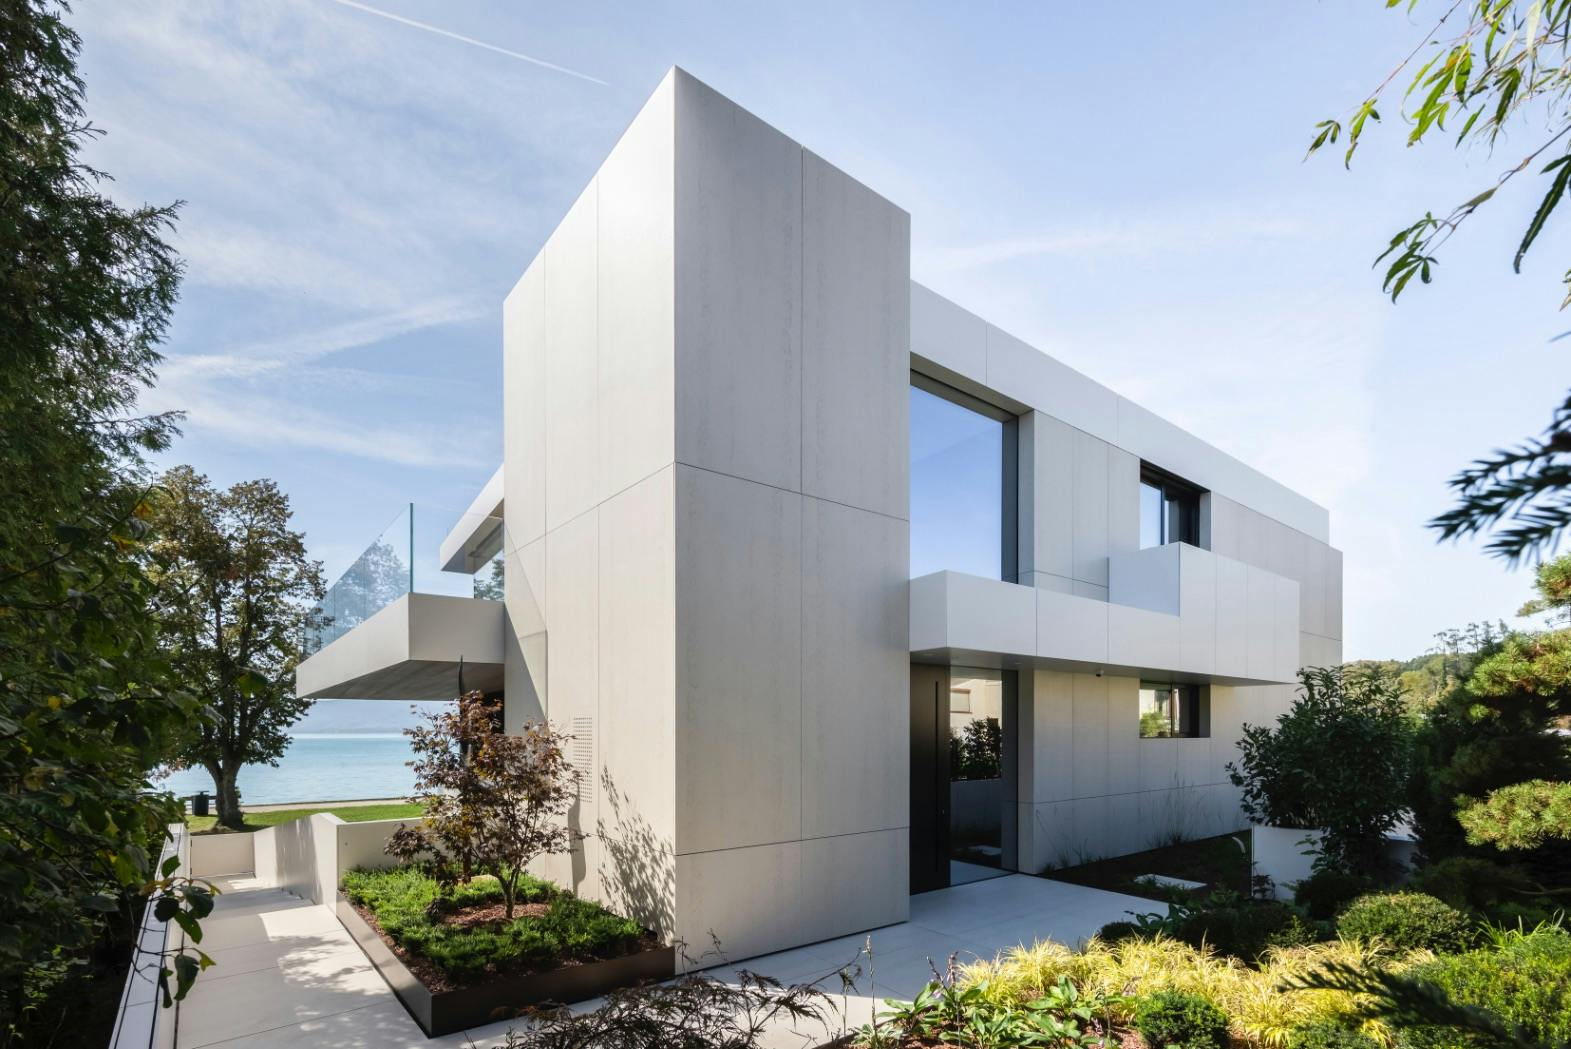 Numéro d'image 43 de la section actuelle de Fusion of styles: Michael Saxtoft’s modern home in Denmark de Cosentino France